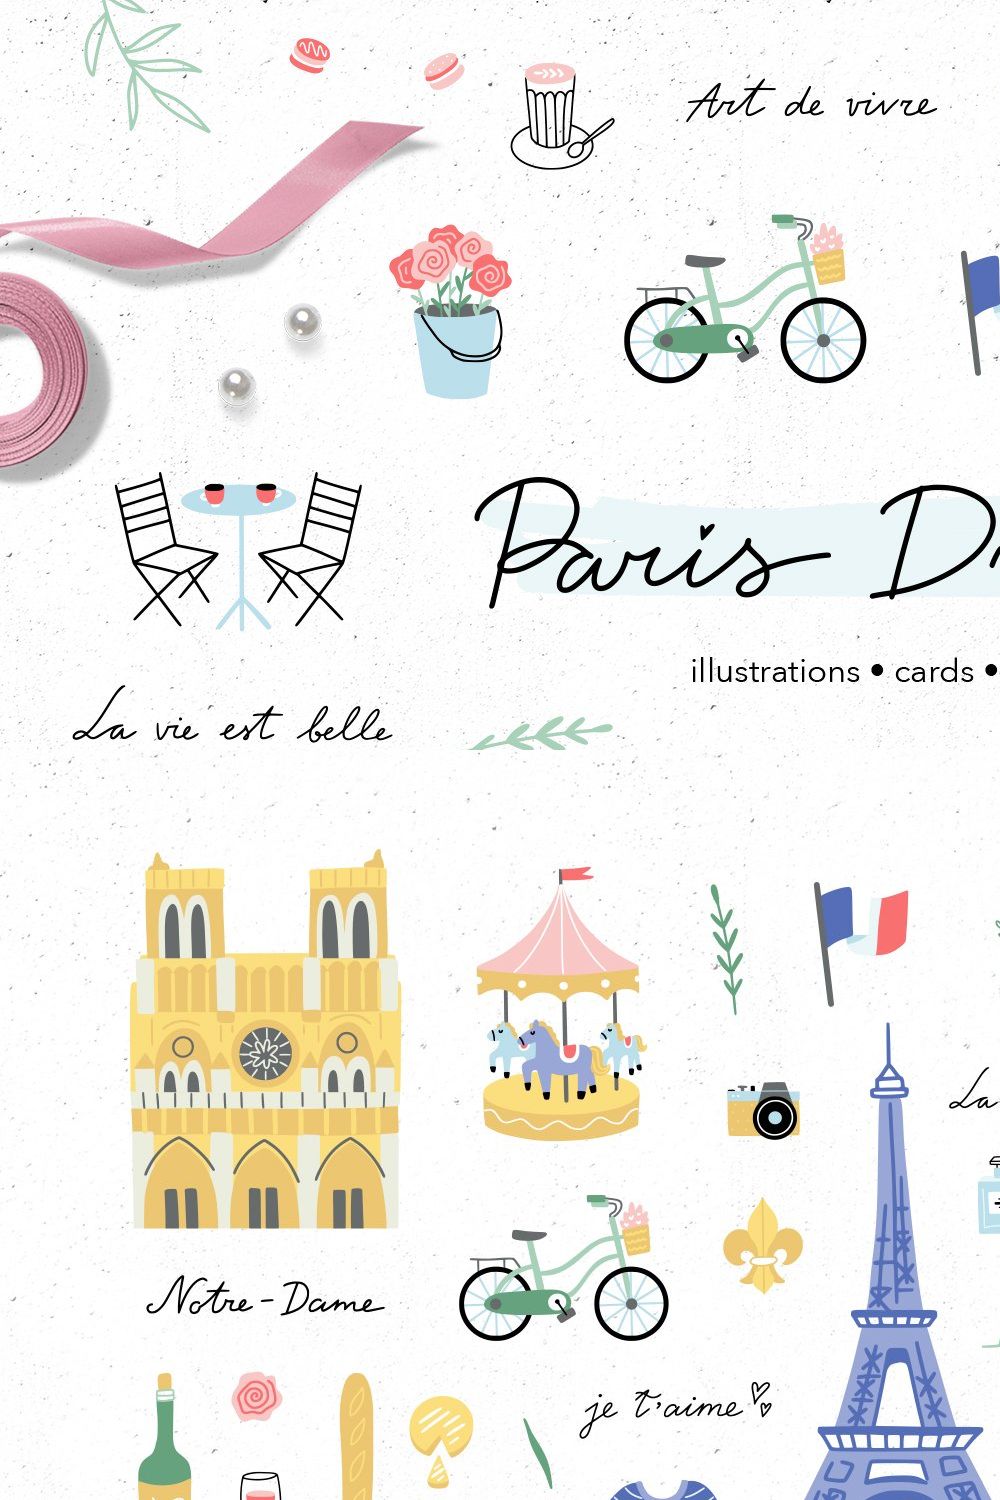 Paris Dreams pinterest preview image.